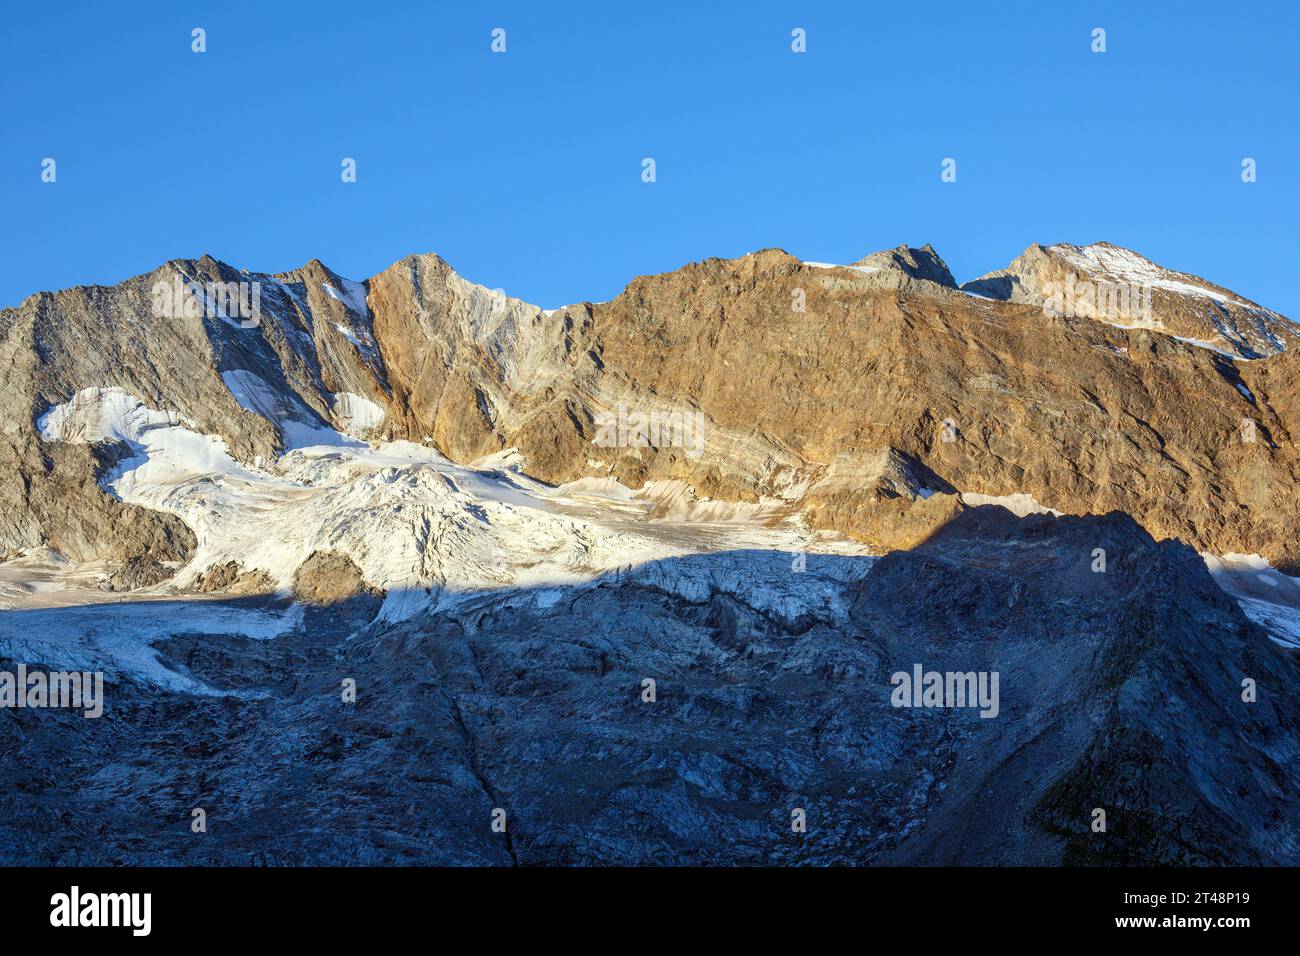 Vue sur la chaîne de montagnes Hochfeiler (Gran Pilastro). Glacier Schlegeiskees. Séracs, crevasses, roches lisses. Alpes de Zillertal. Tyrol. Autriche. Europe. Banque D'Images